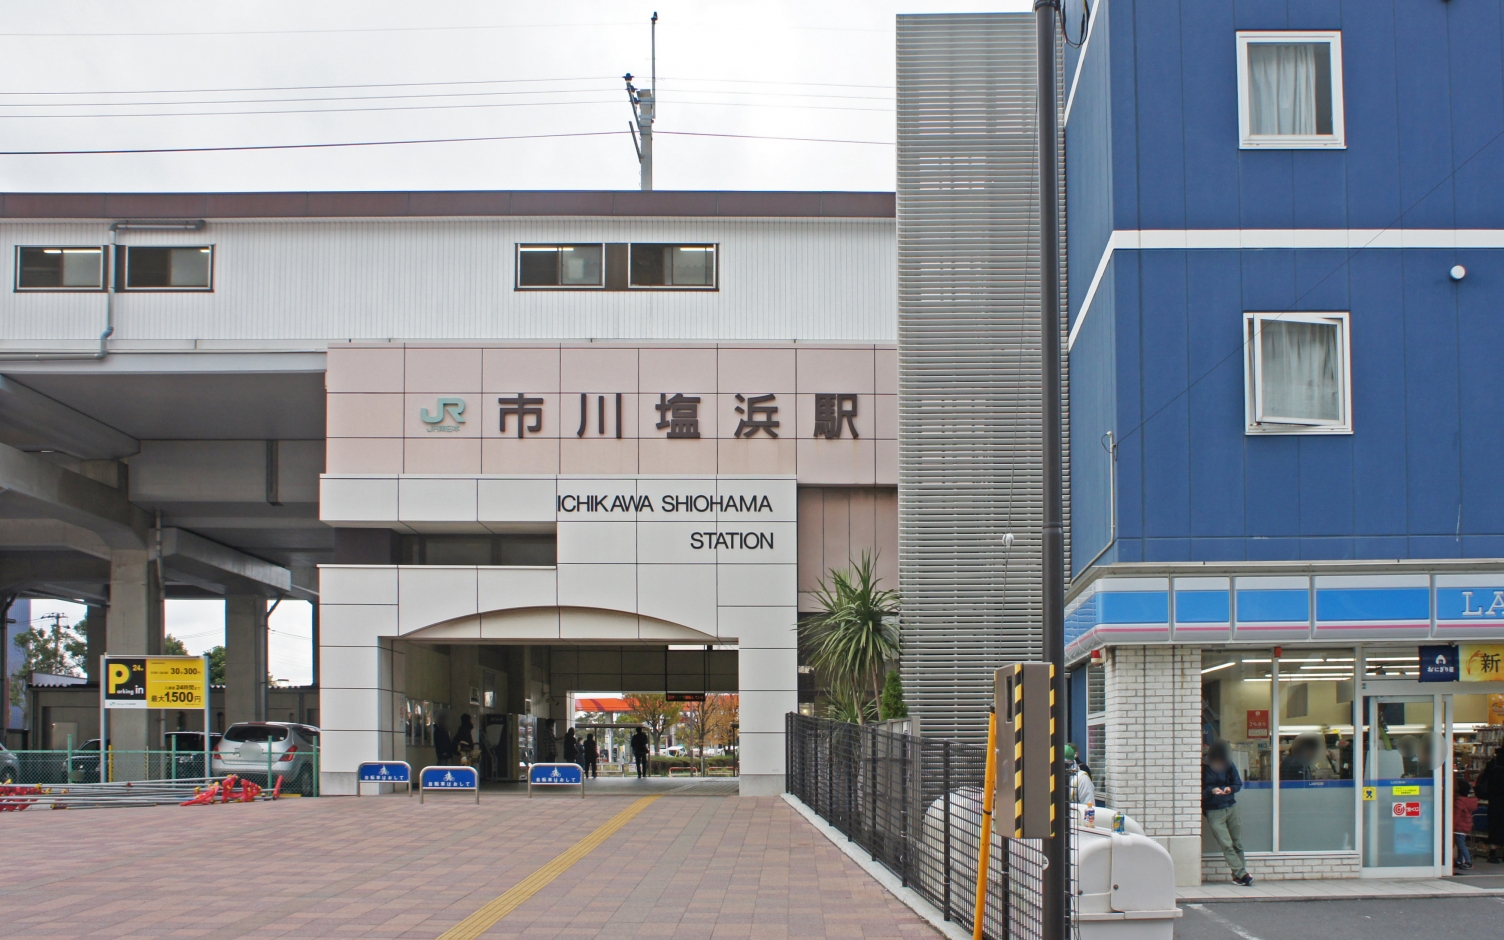 市川塩浜駅（JR京葉線）近くのそろばん・珠算教室